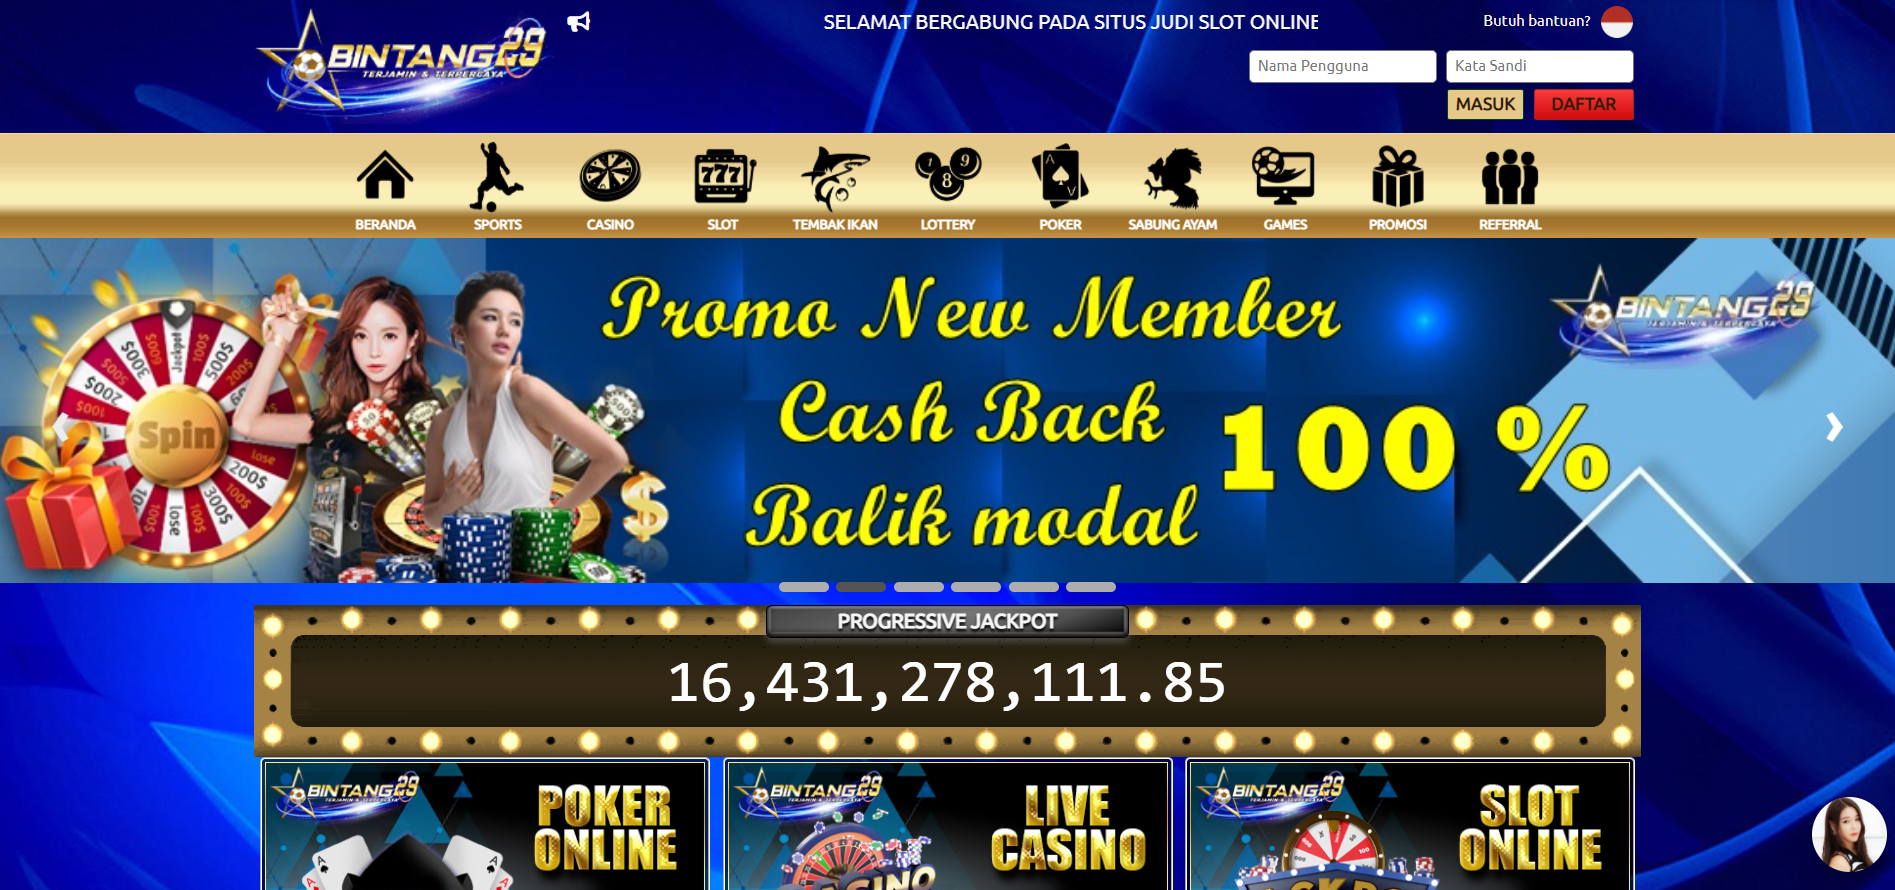 BINTANG29 - Situs Slot, dan Situs Poker Terpercaya